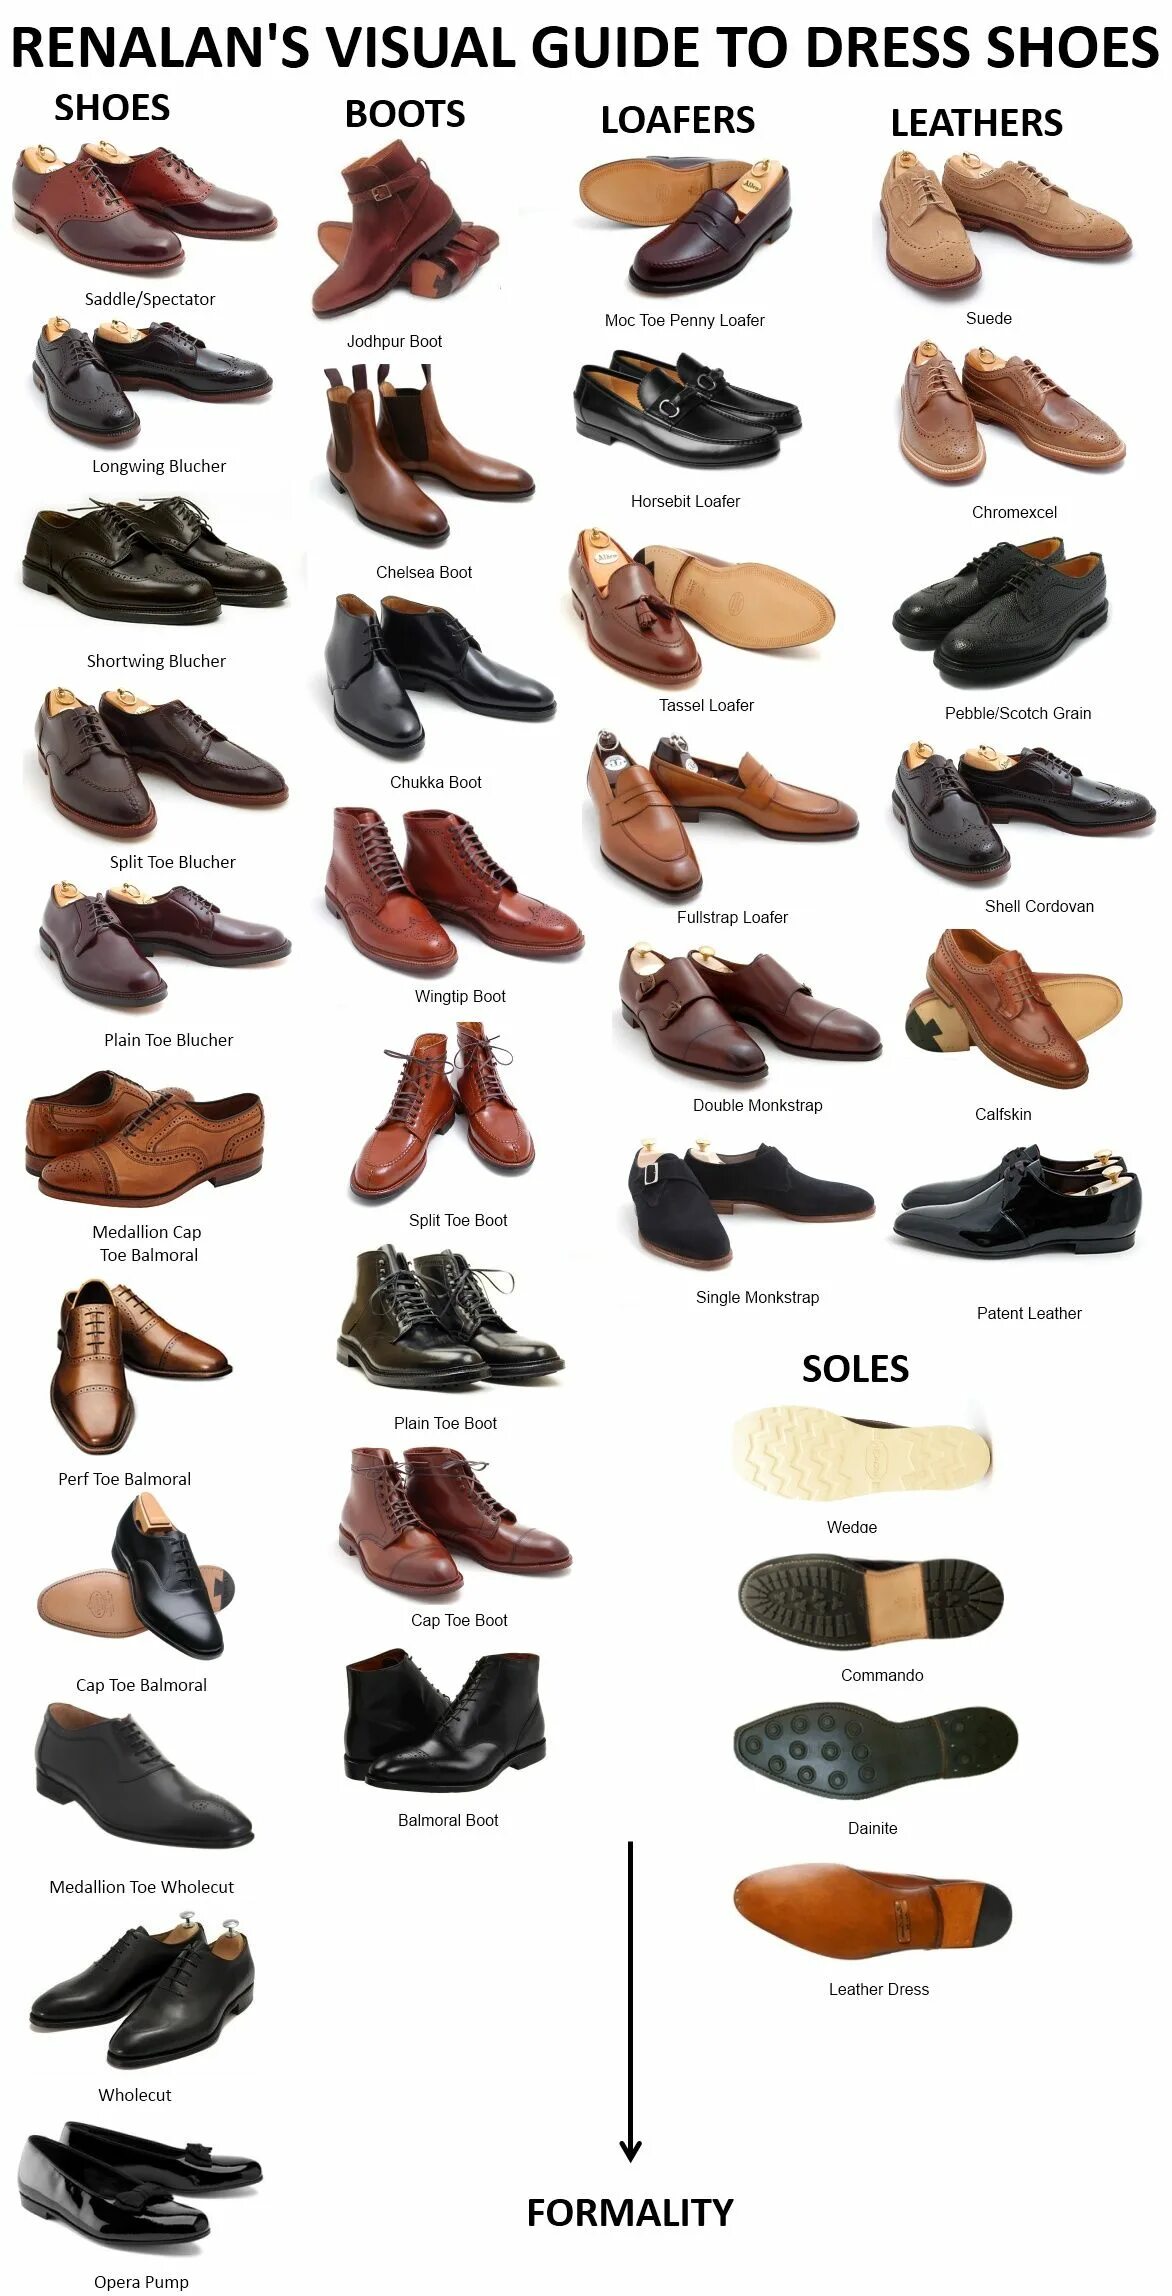 Удобная и качественная обувь какой фирмы. Типы мужской обуви. Название мужских ботинок. Мужская обувь названия моделей. Модели мужских туфель названия.